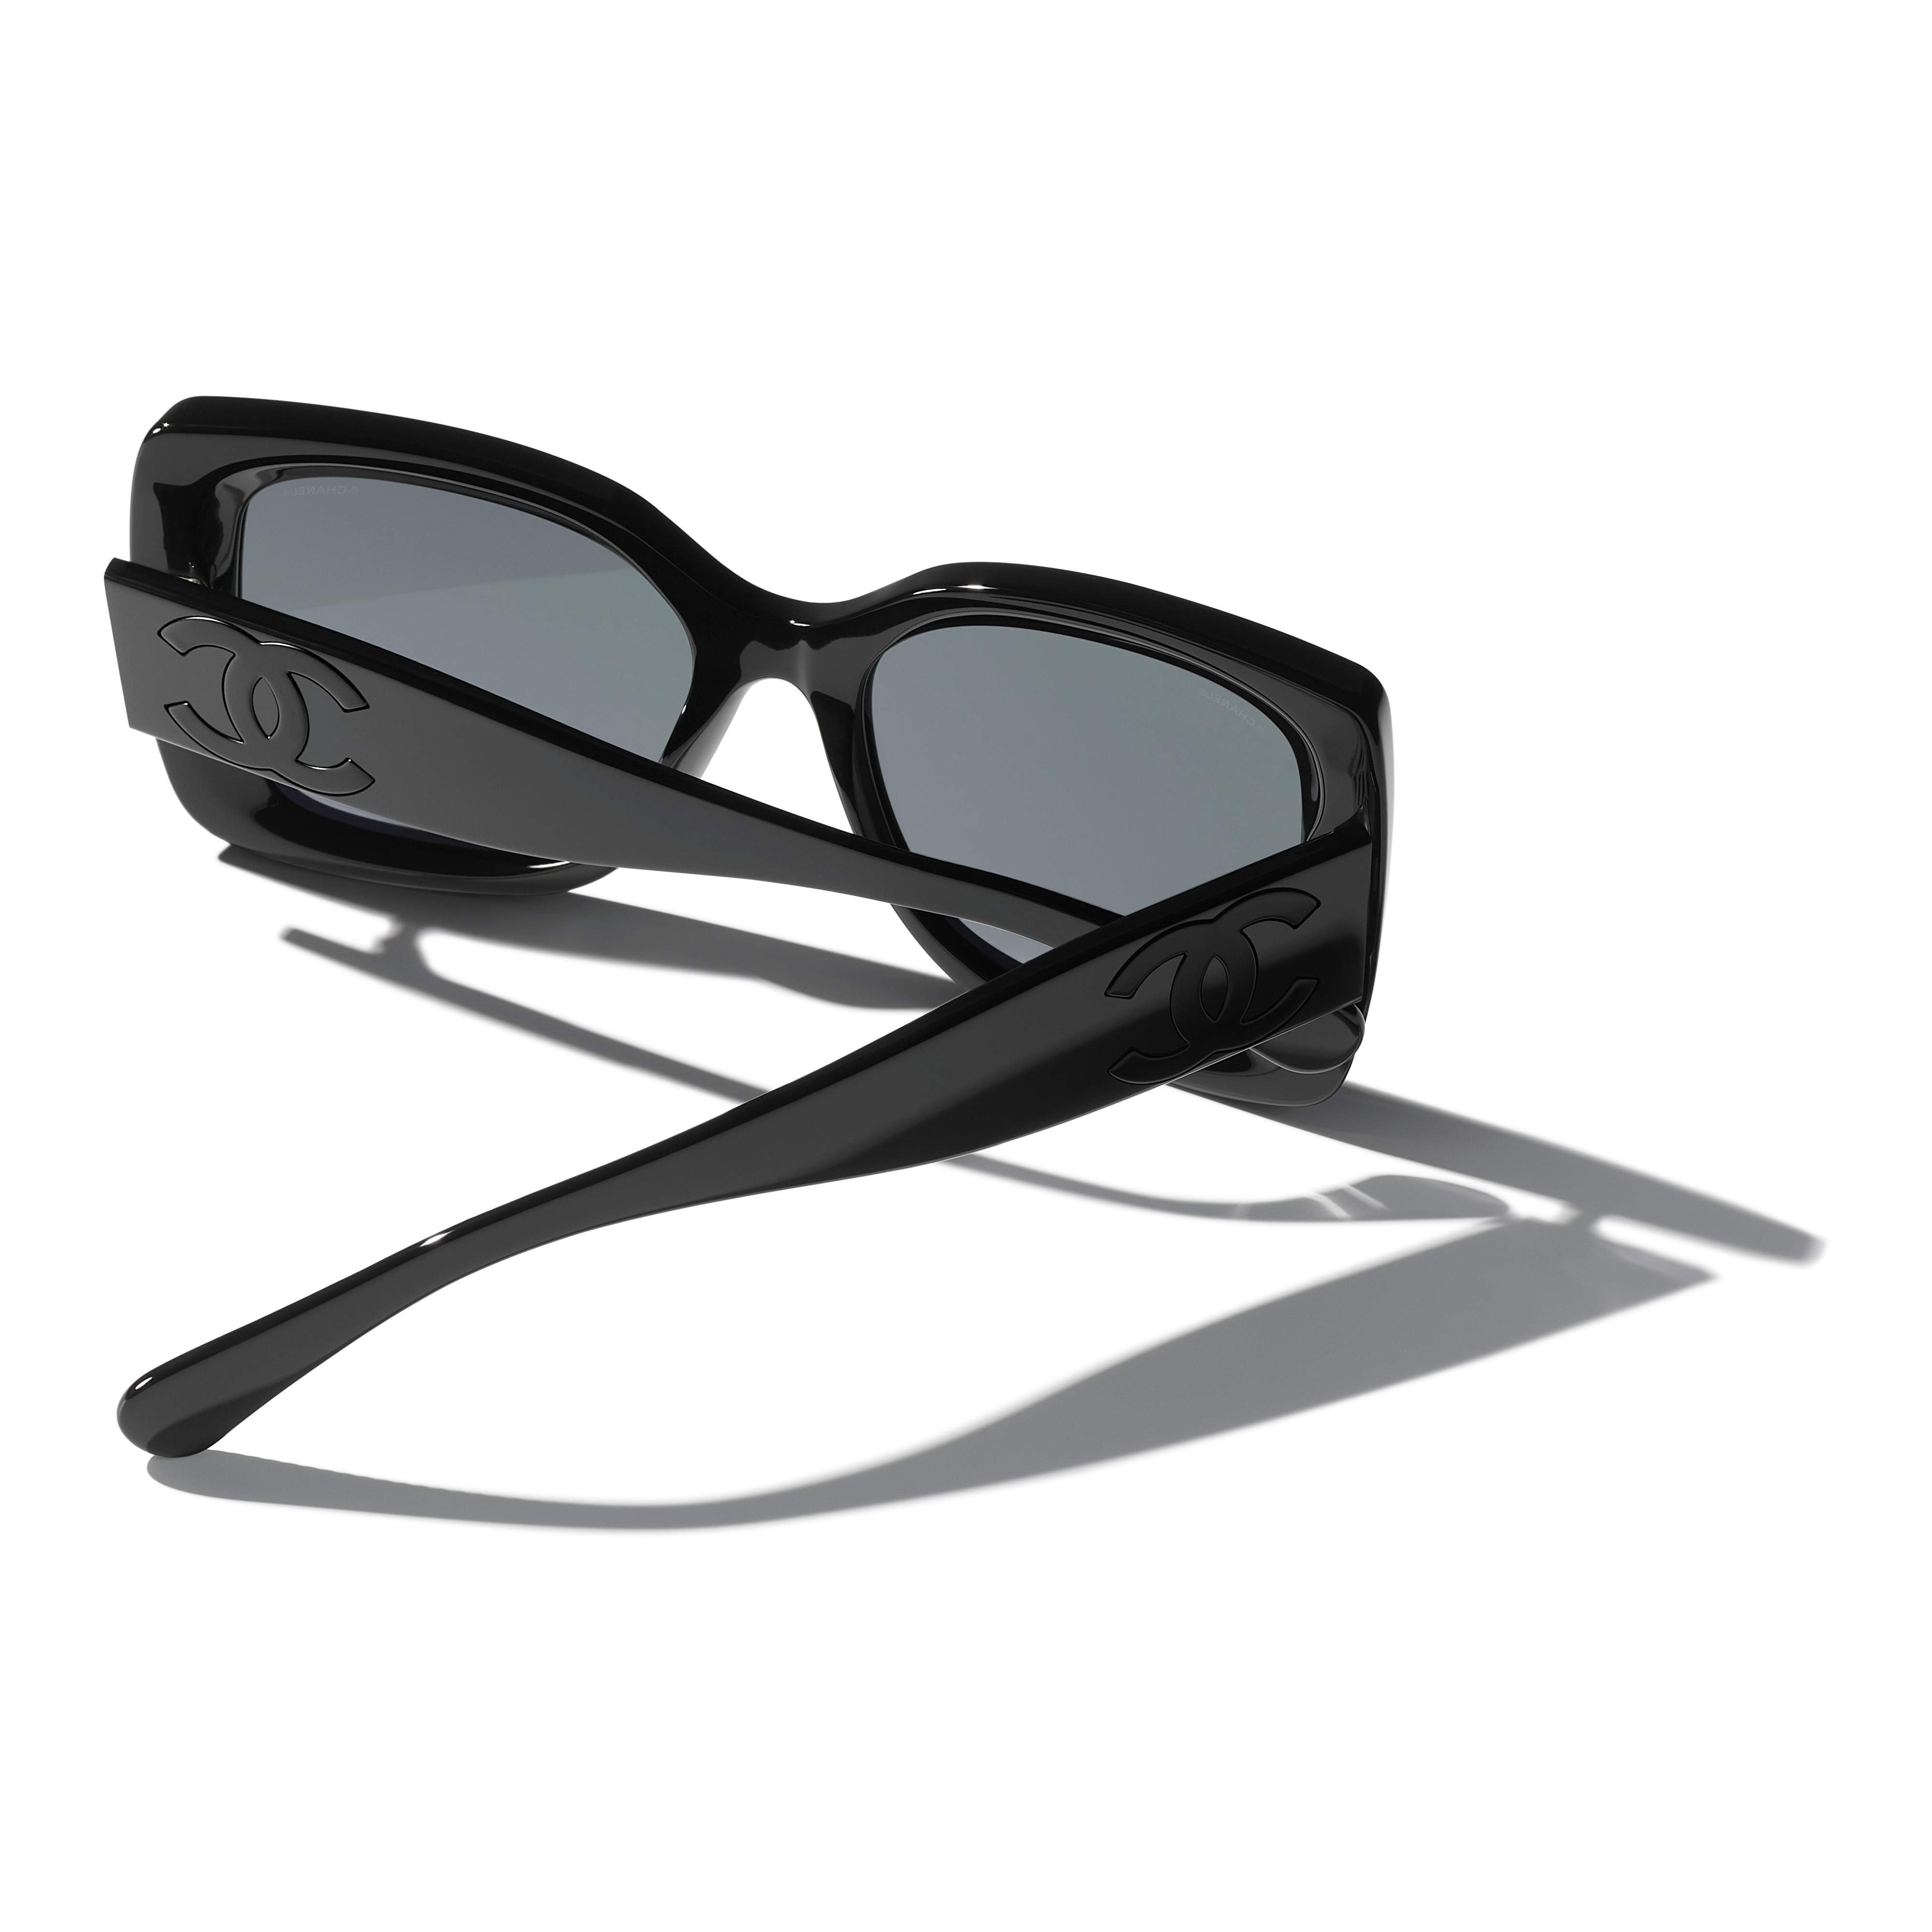 Sunglasses CHANEL CH5494 C888S4 53-18 Black in stock, Price 258,33 €